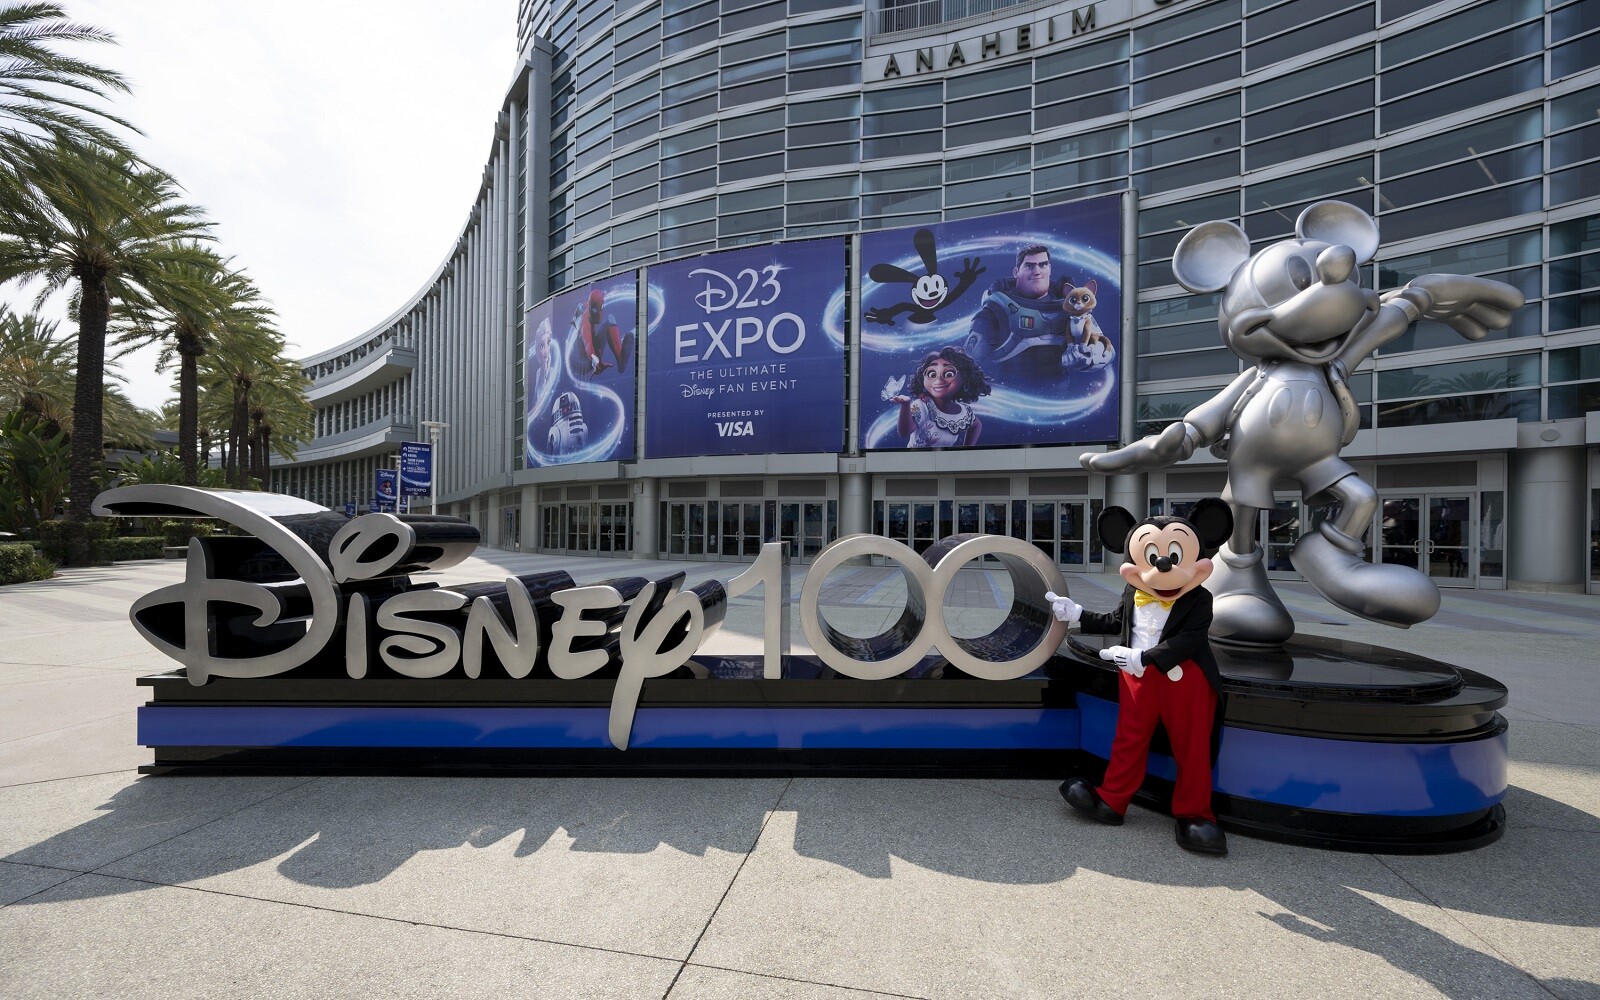 Disney 100 Expo